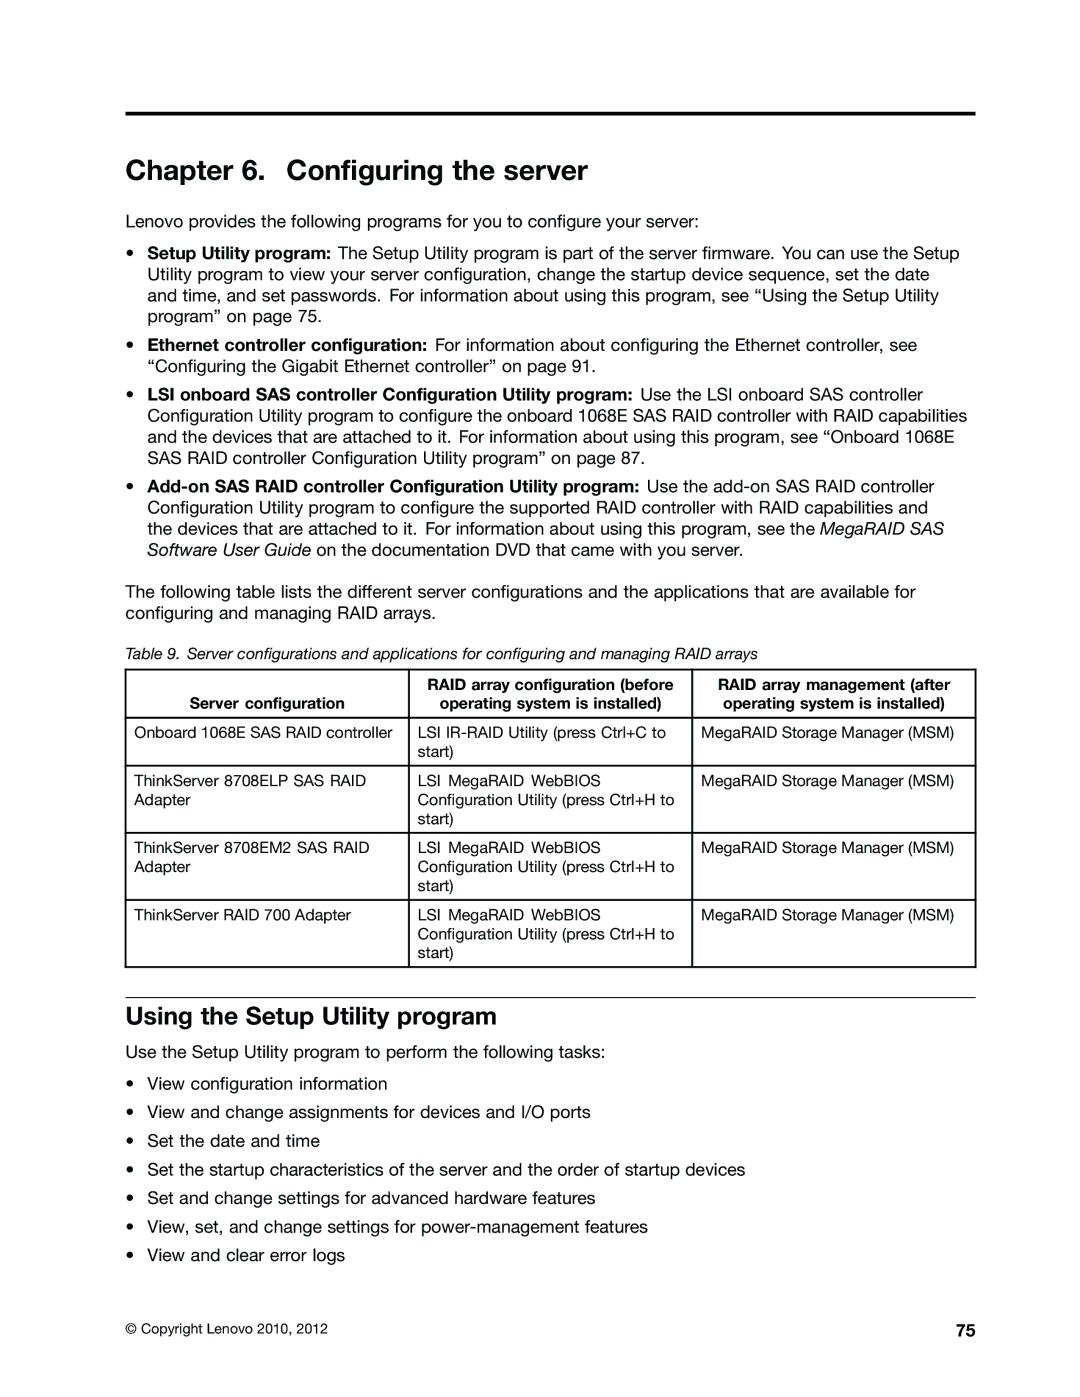 Lenovo 1048, 1046, 1047, 1045 manual Configuring the server, Using the Setup Utility program 